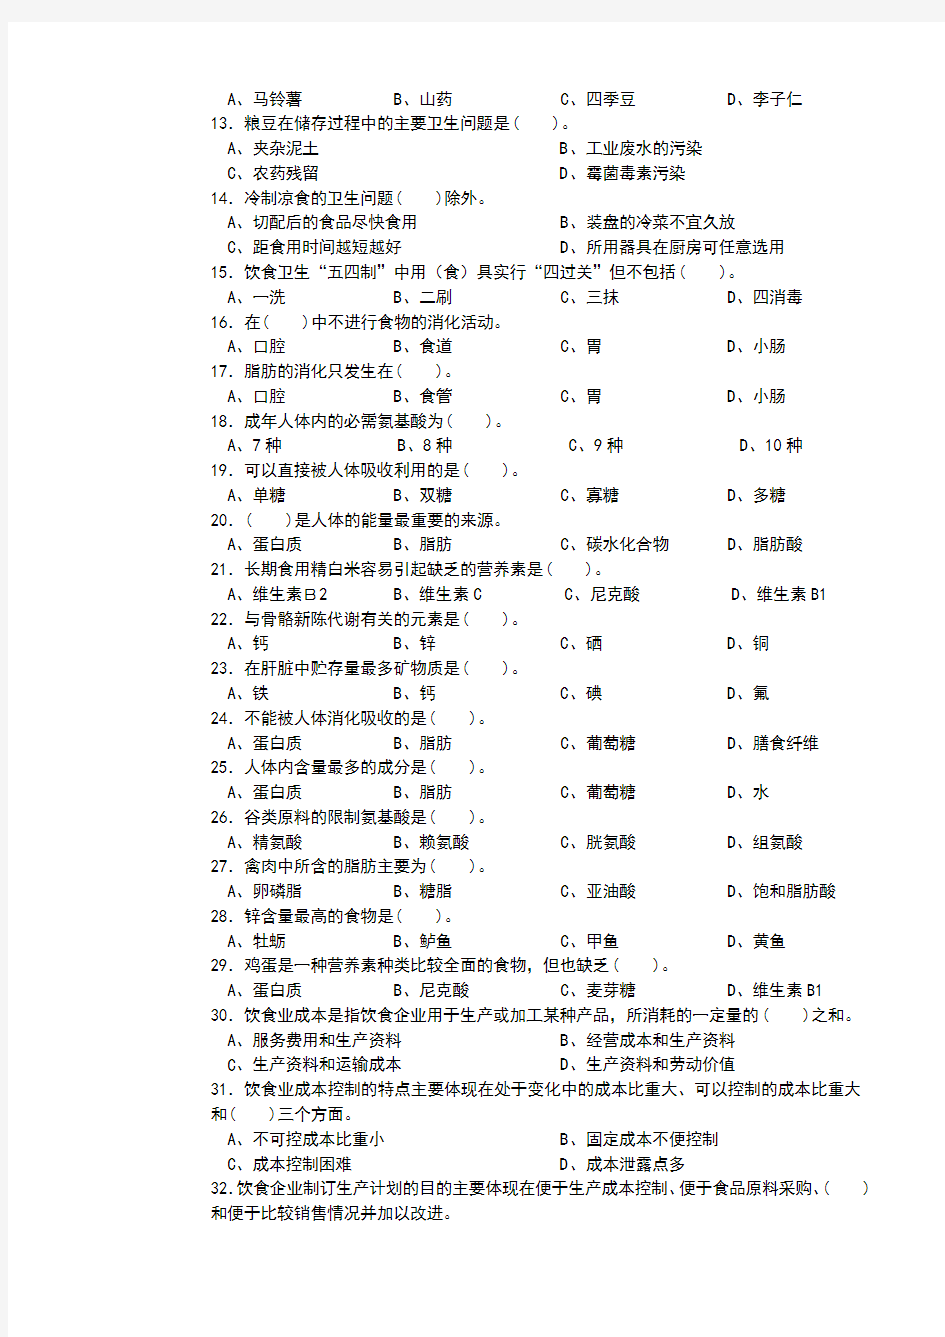 中式烹调师初级理论知识试卷1